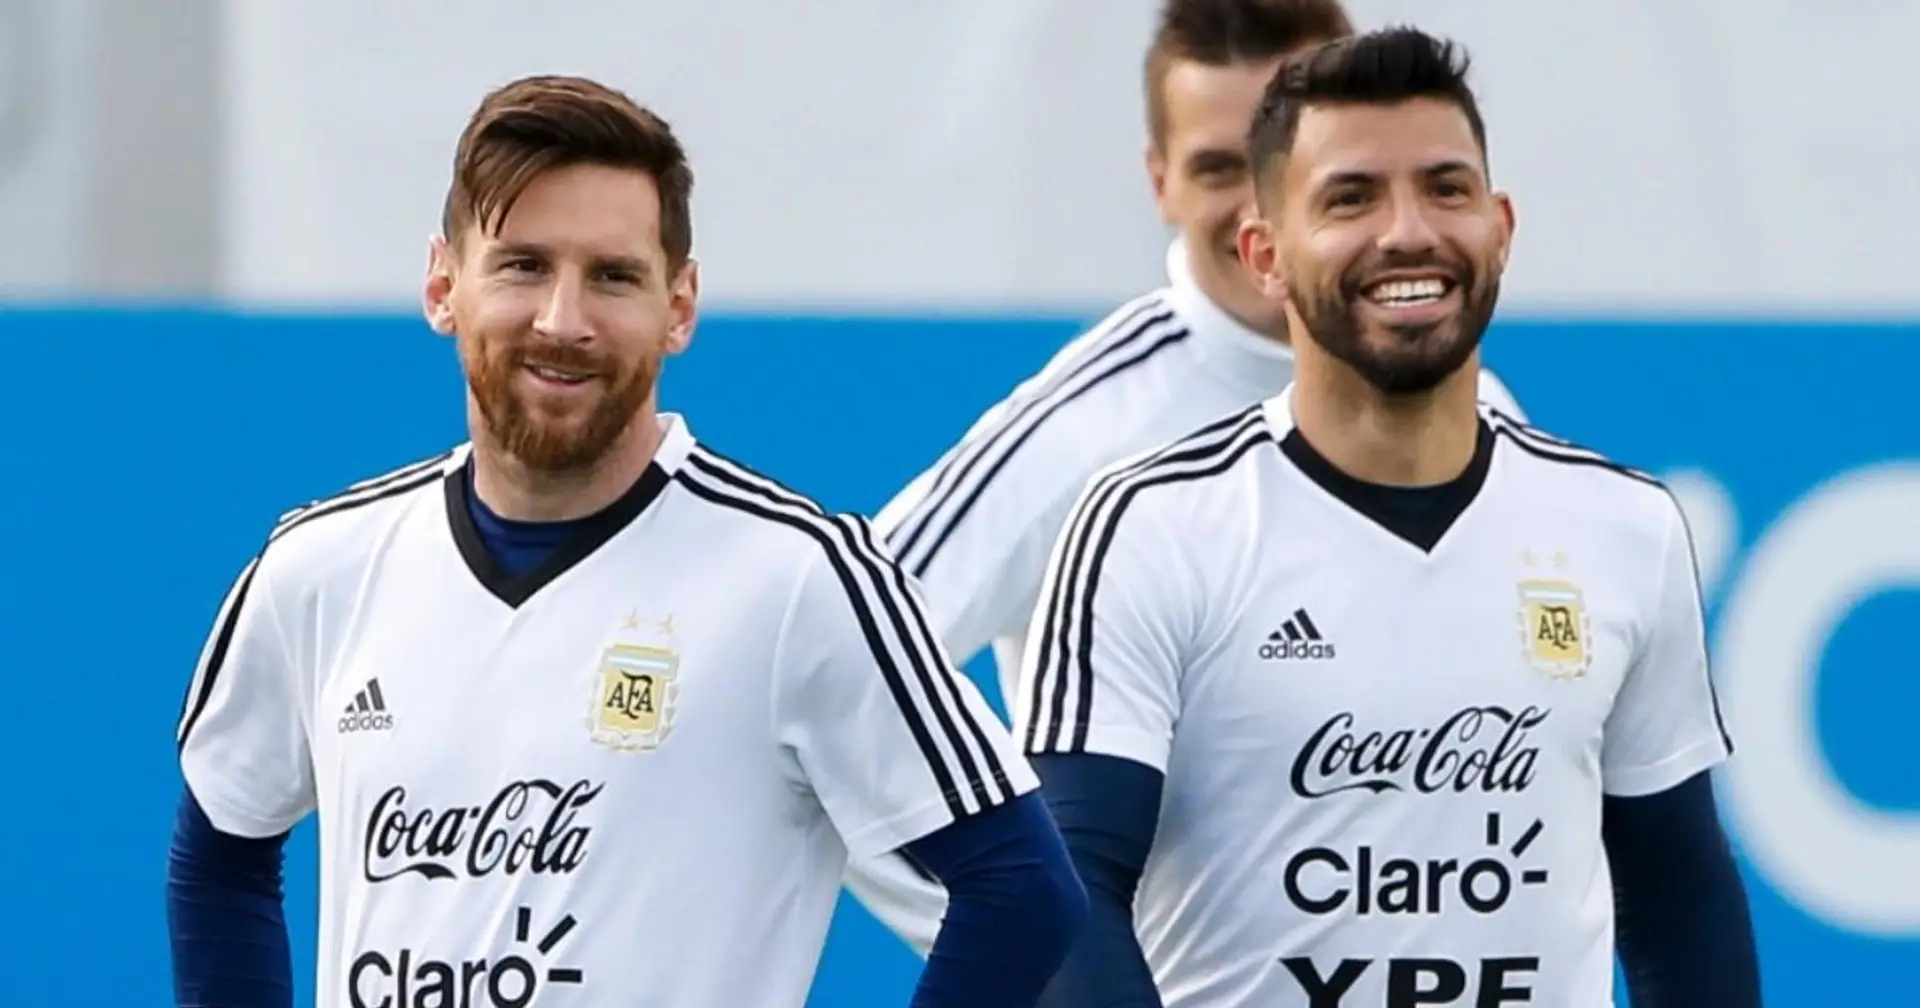 La récente activité Instagram d'Aguero peut faire allusion au transfert de Messi à City